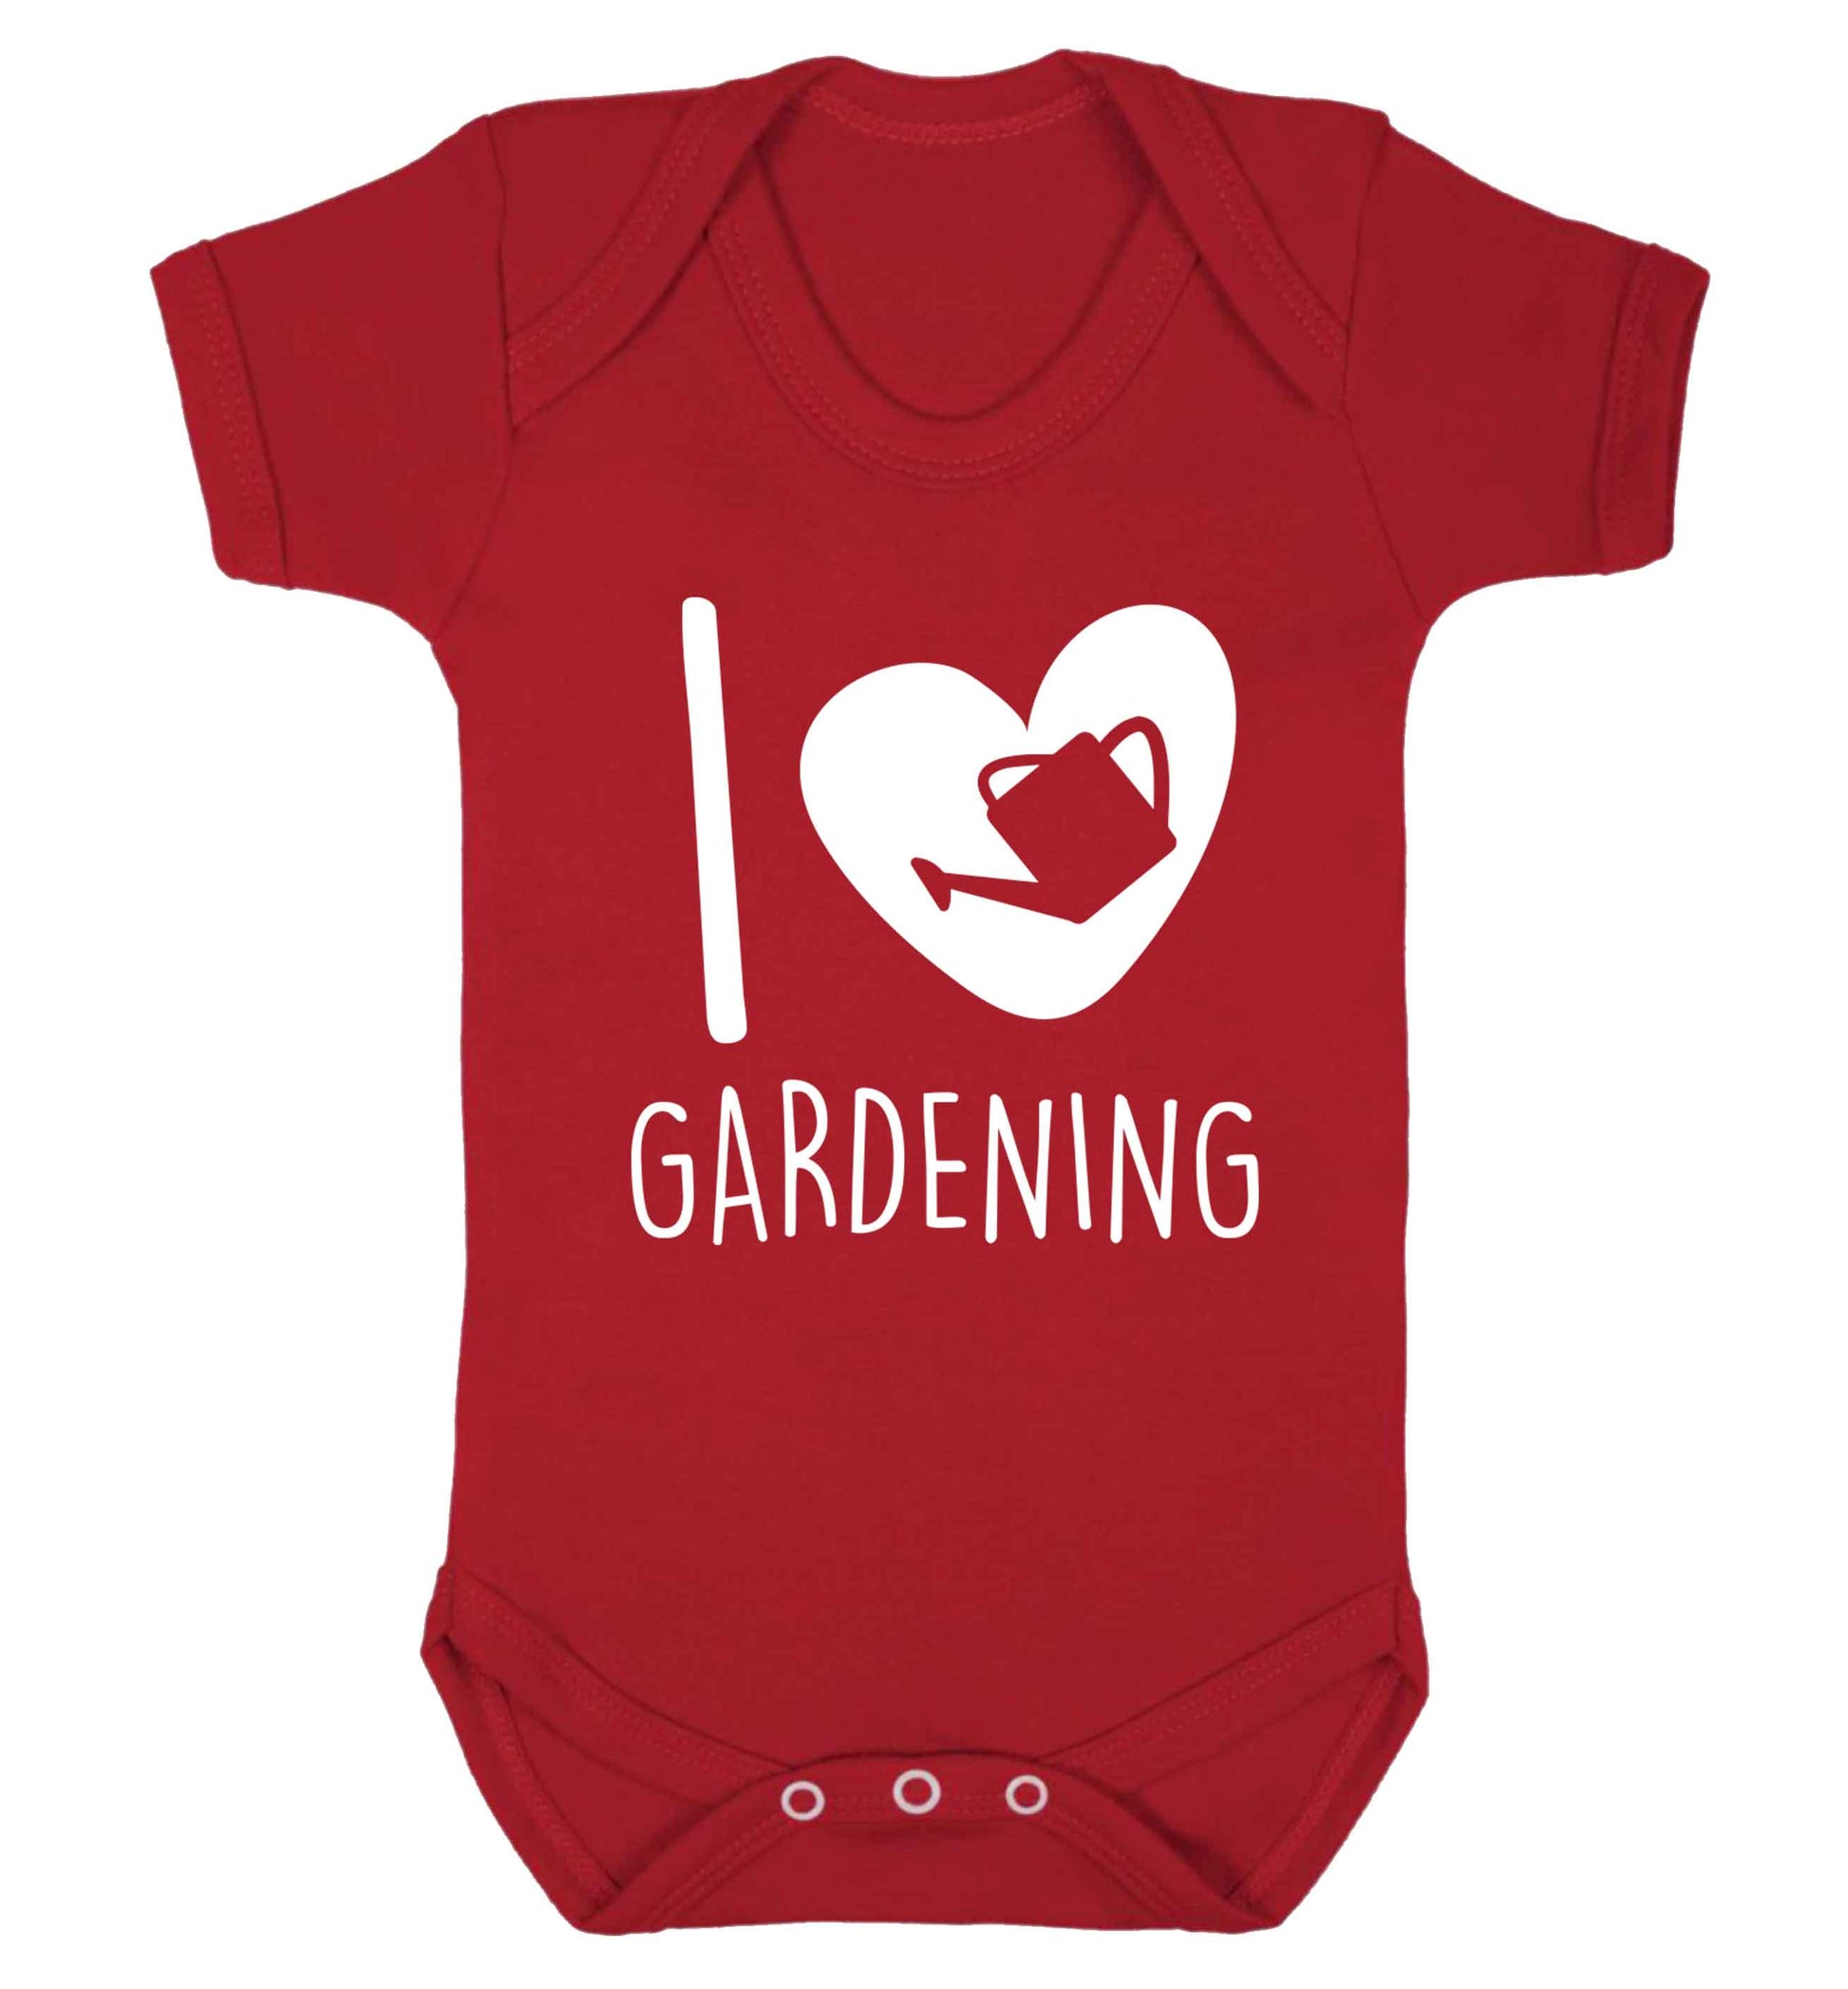 I love gardening Baby Vest red 18-24 months